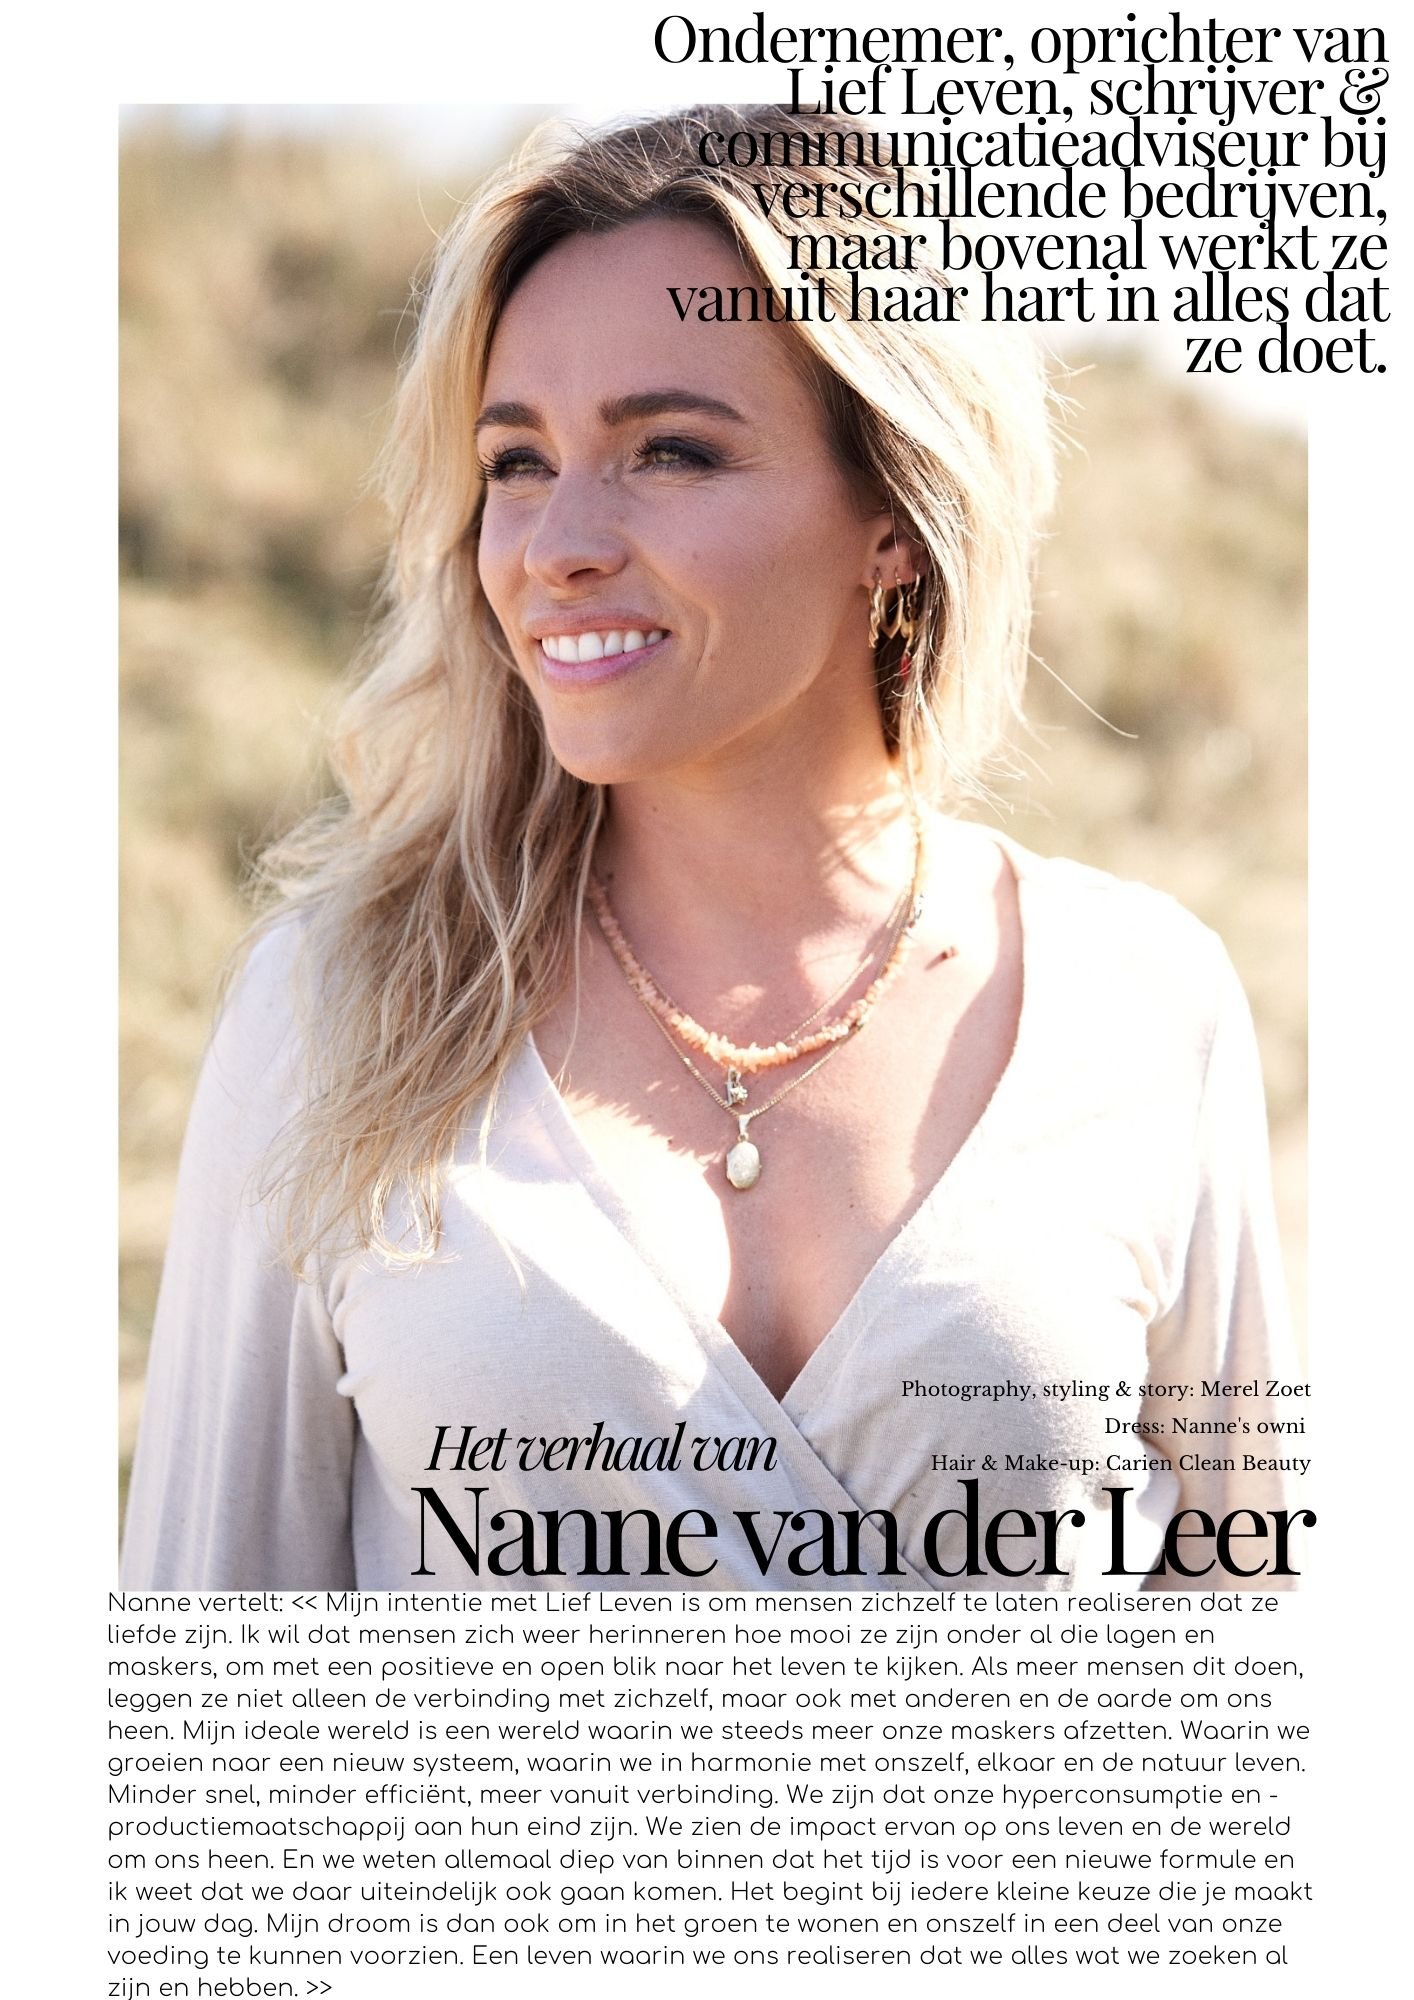 4Nanne van der Leer by Merel Zoet.jpg